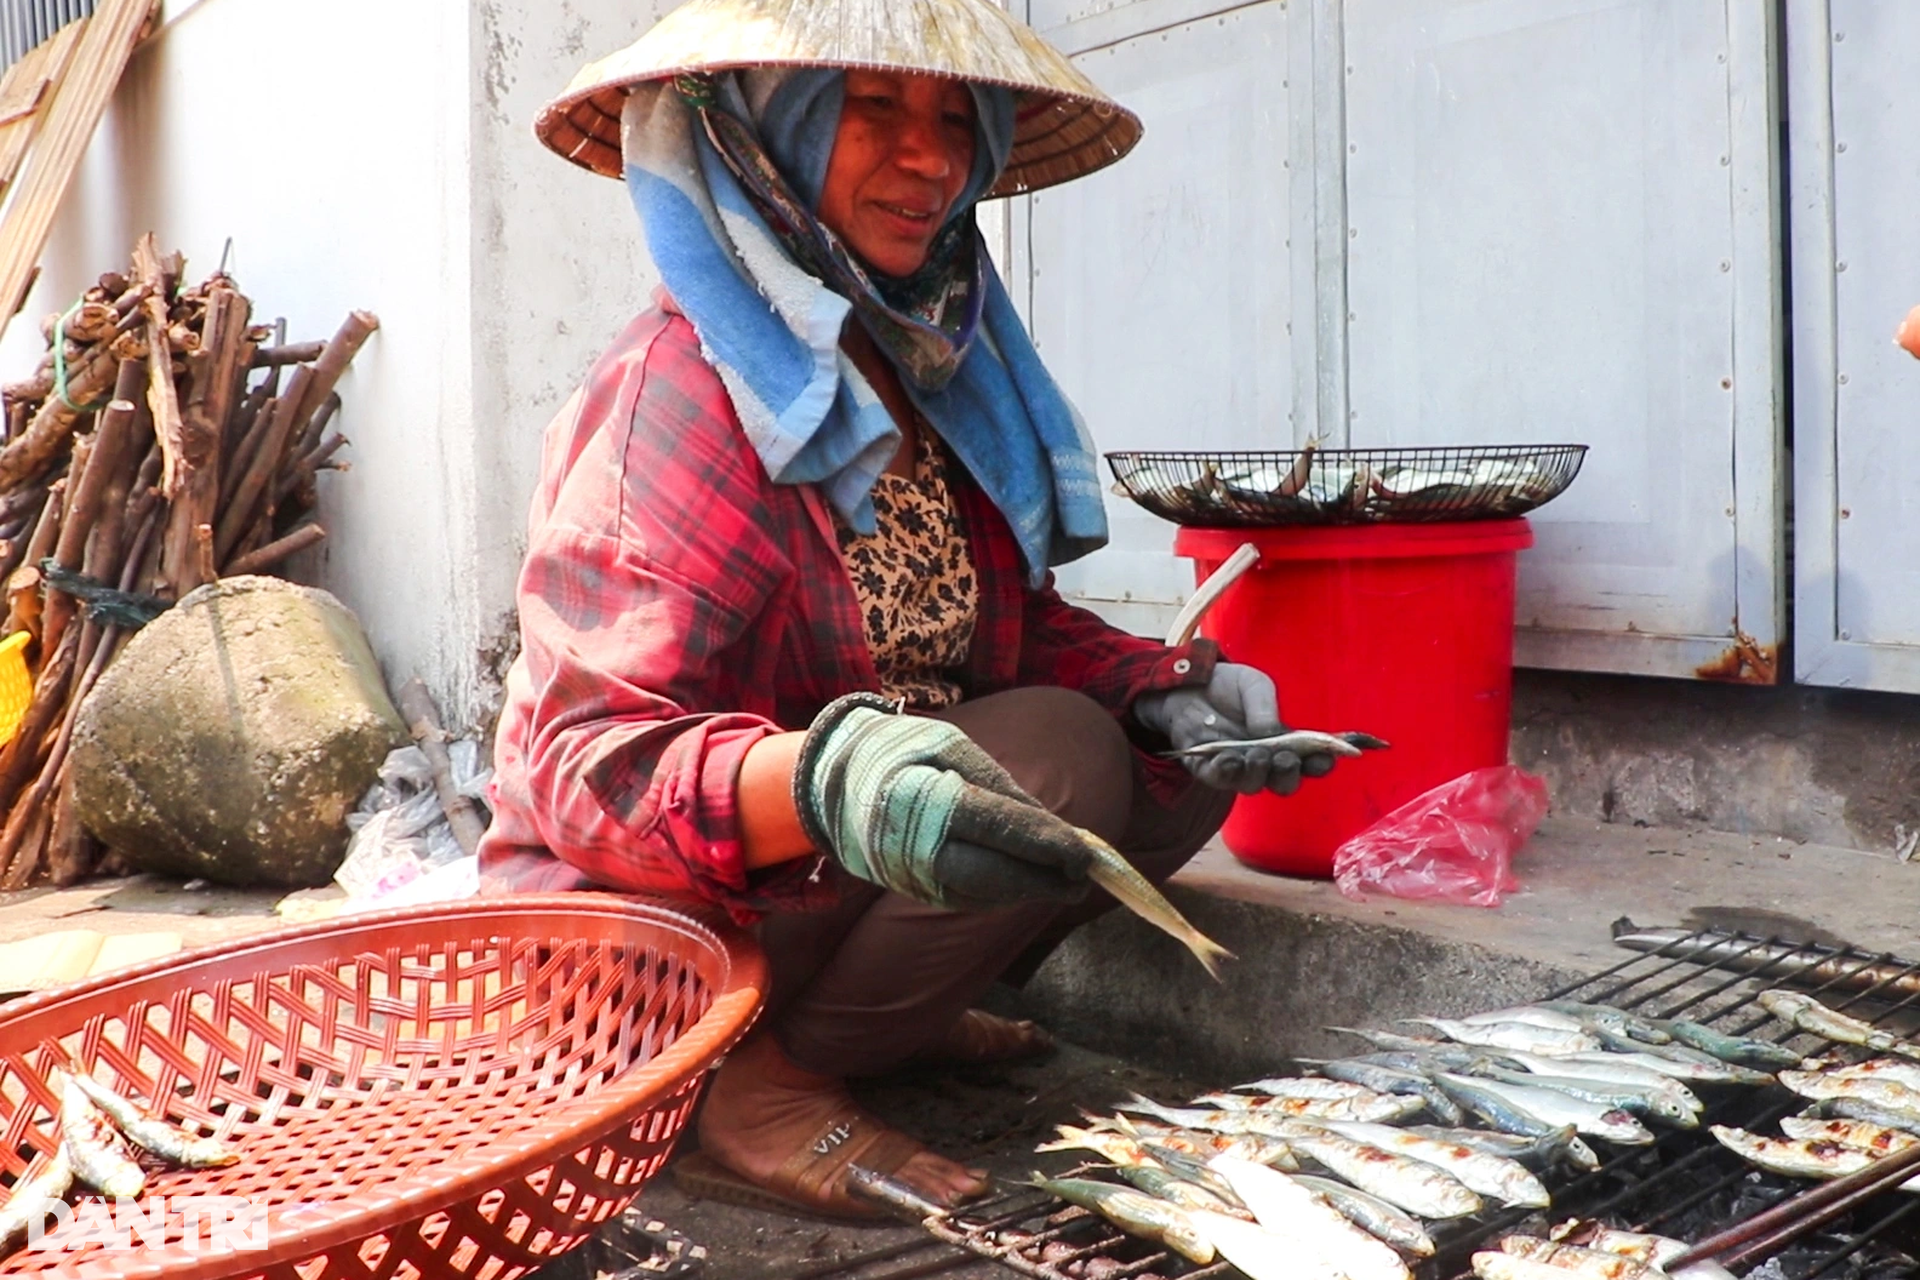 Phụ nữ làng biển mướt mồ hồi nướng cá bên bếp lửa giữa trưa 39 độ C - 10